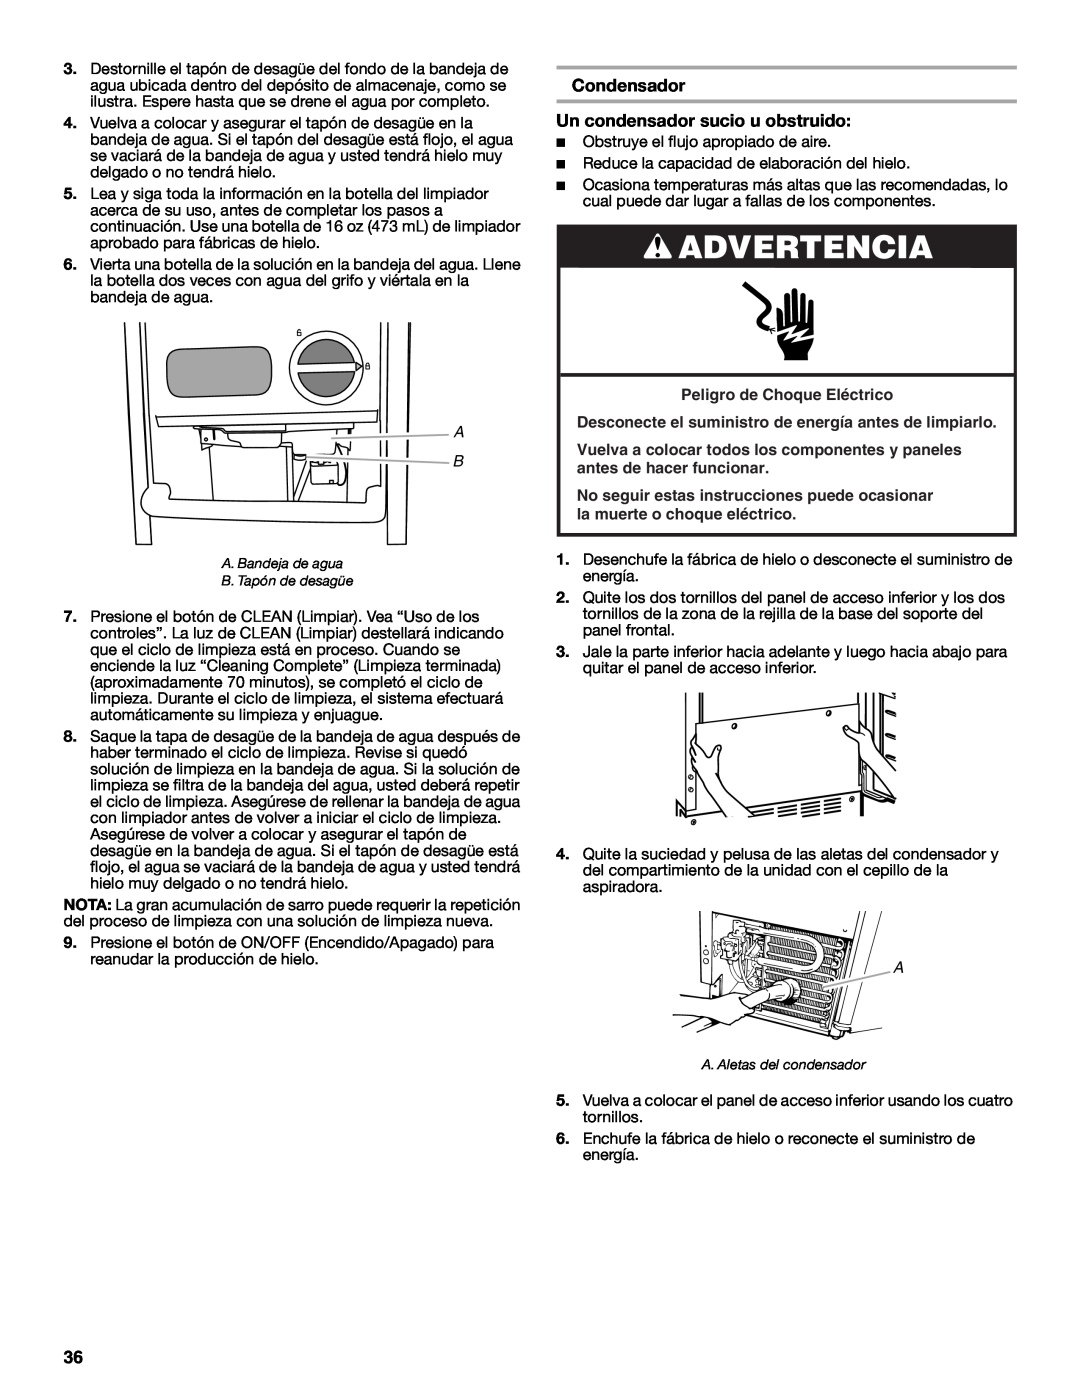 Jenn-Air W10519943B manual Condensador Un condensador sucio u obstruido, Advertencia 